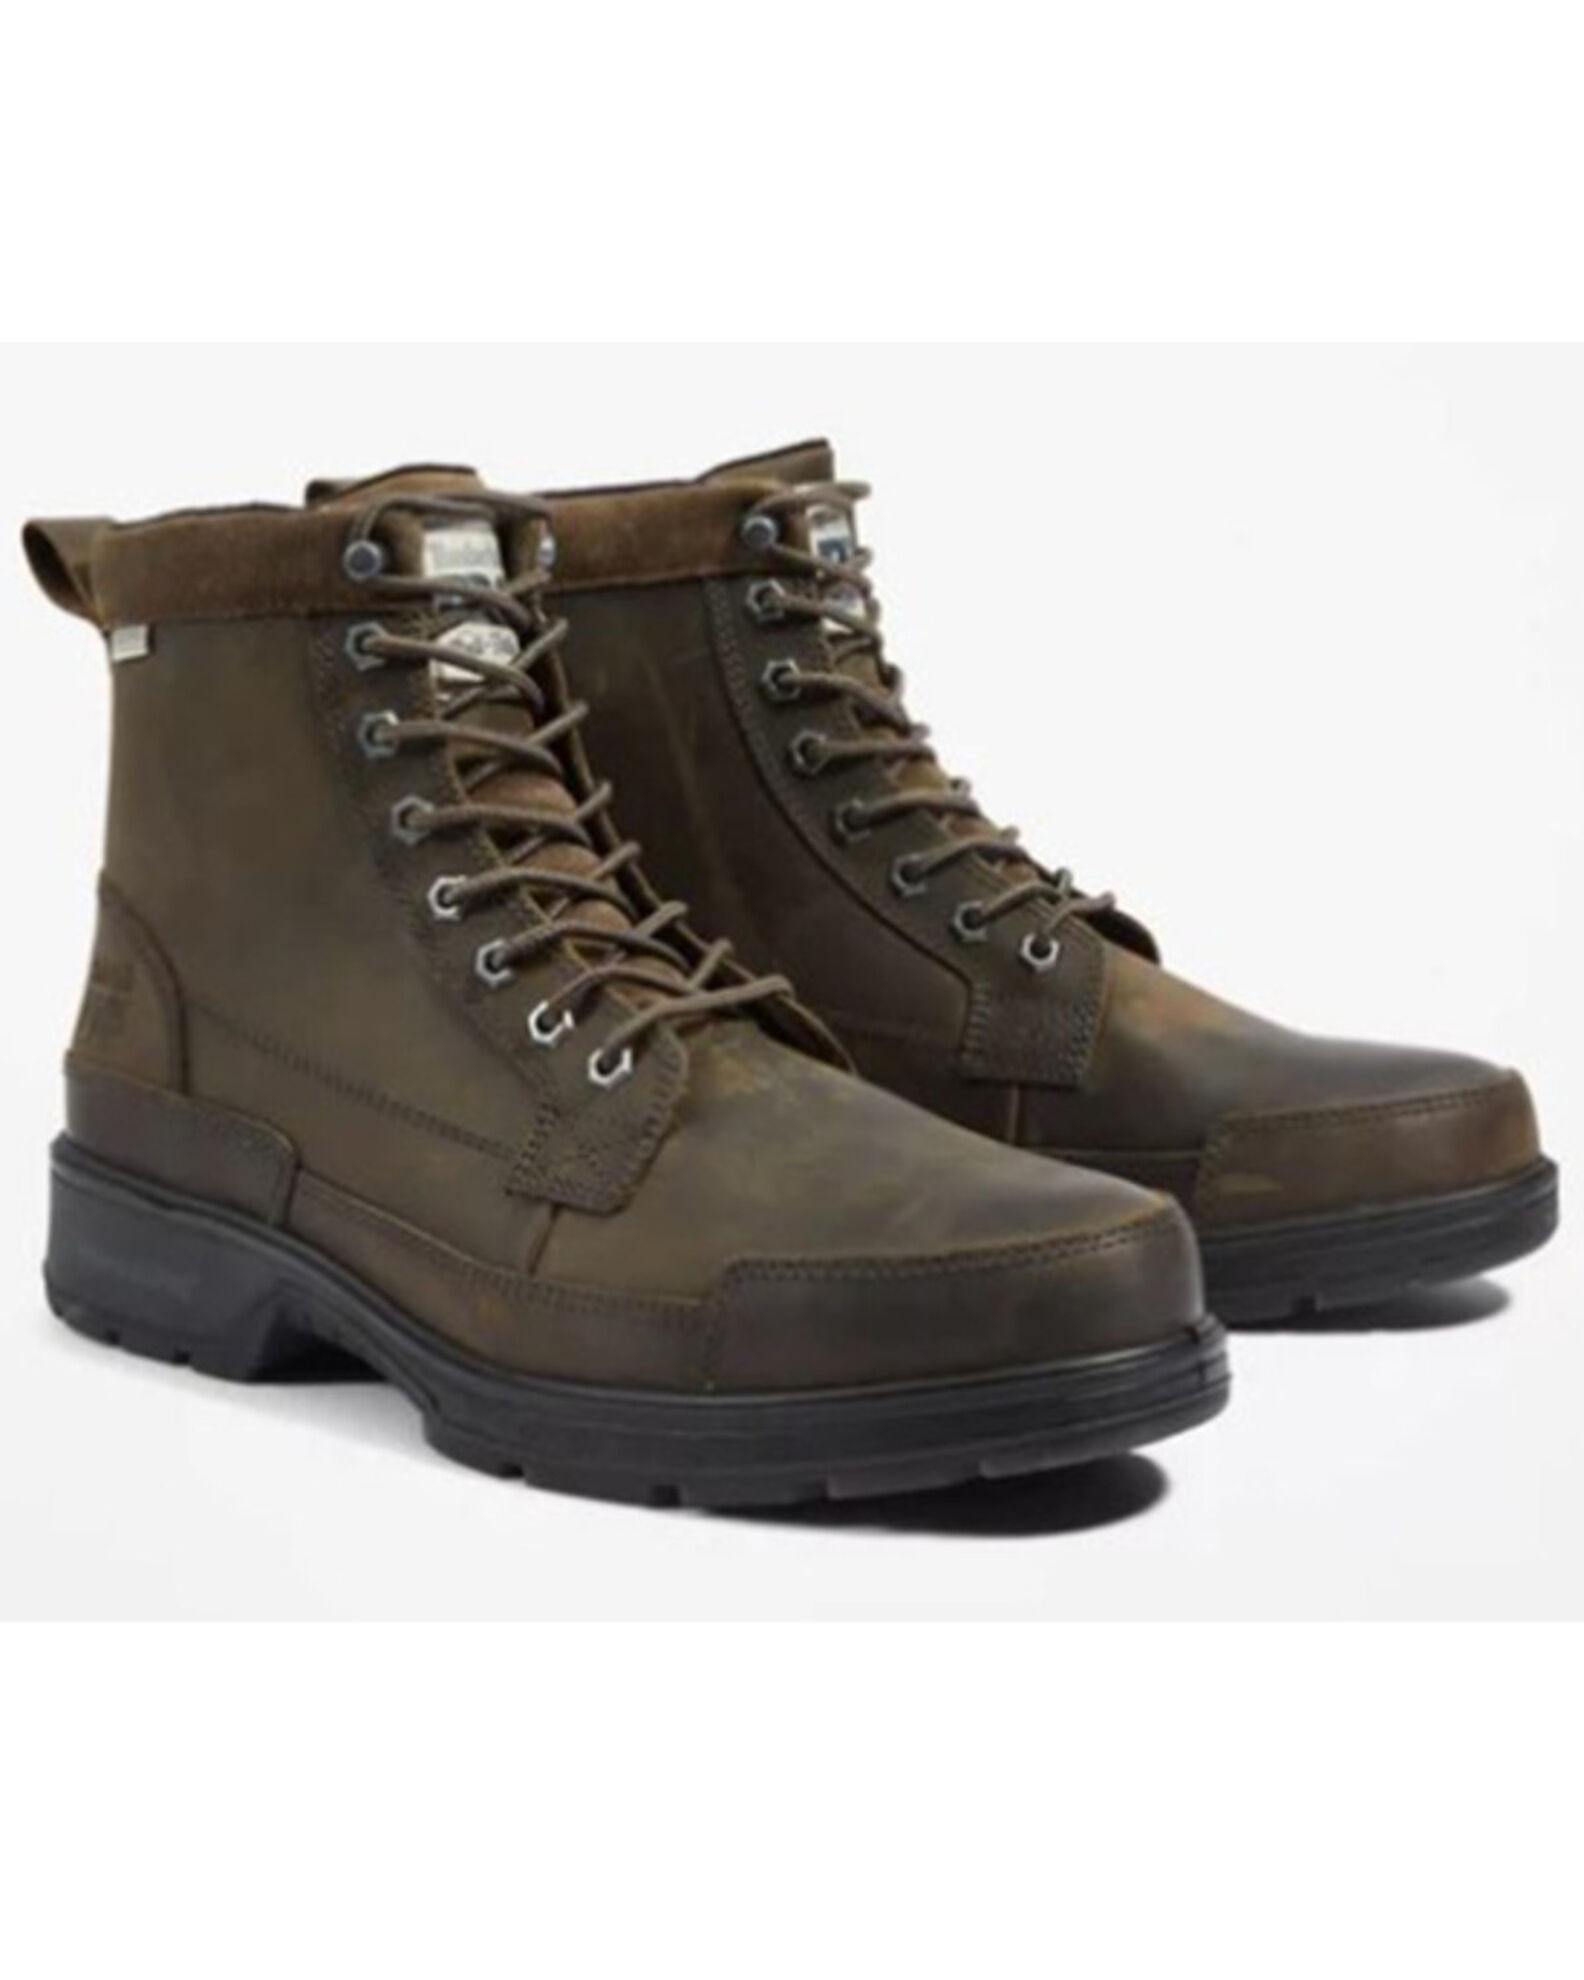 Timberland Men's 6" Nashoba EK + Waterproof Work Boots - Composite Toe